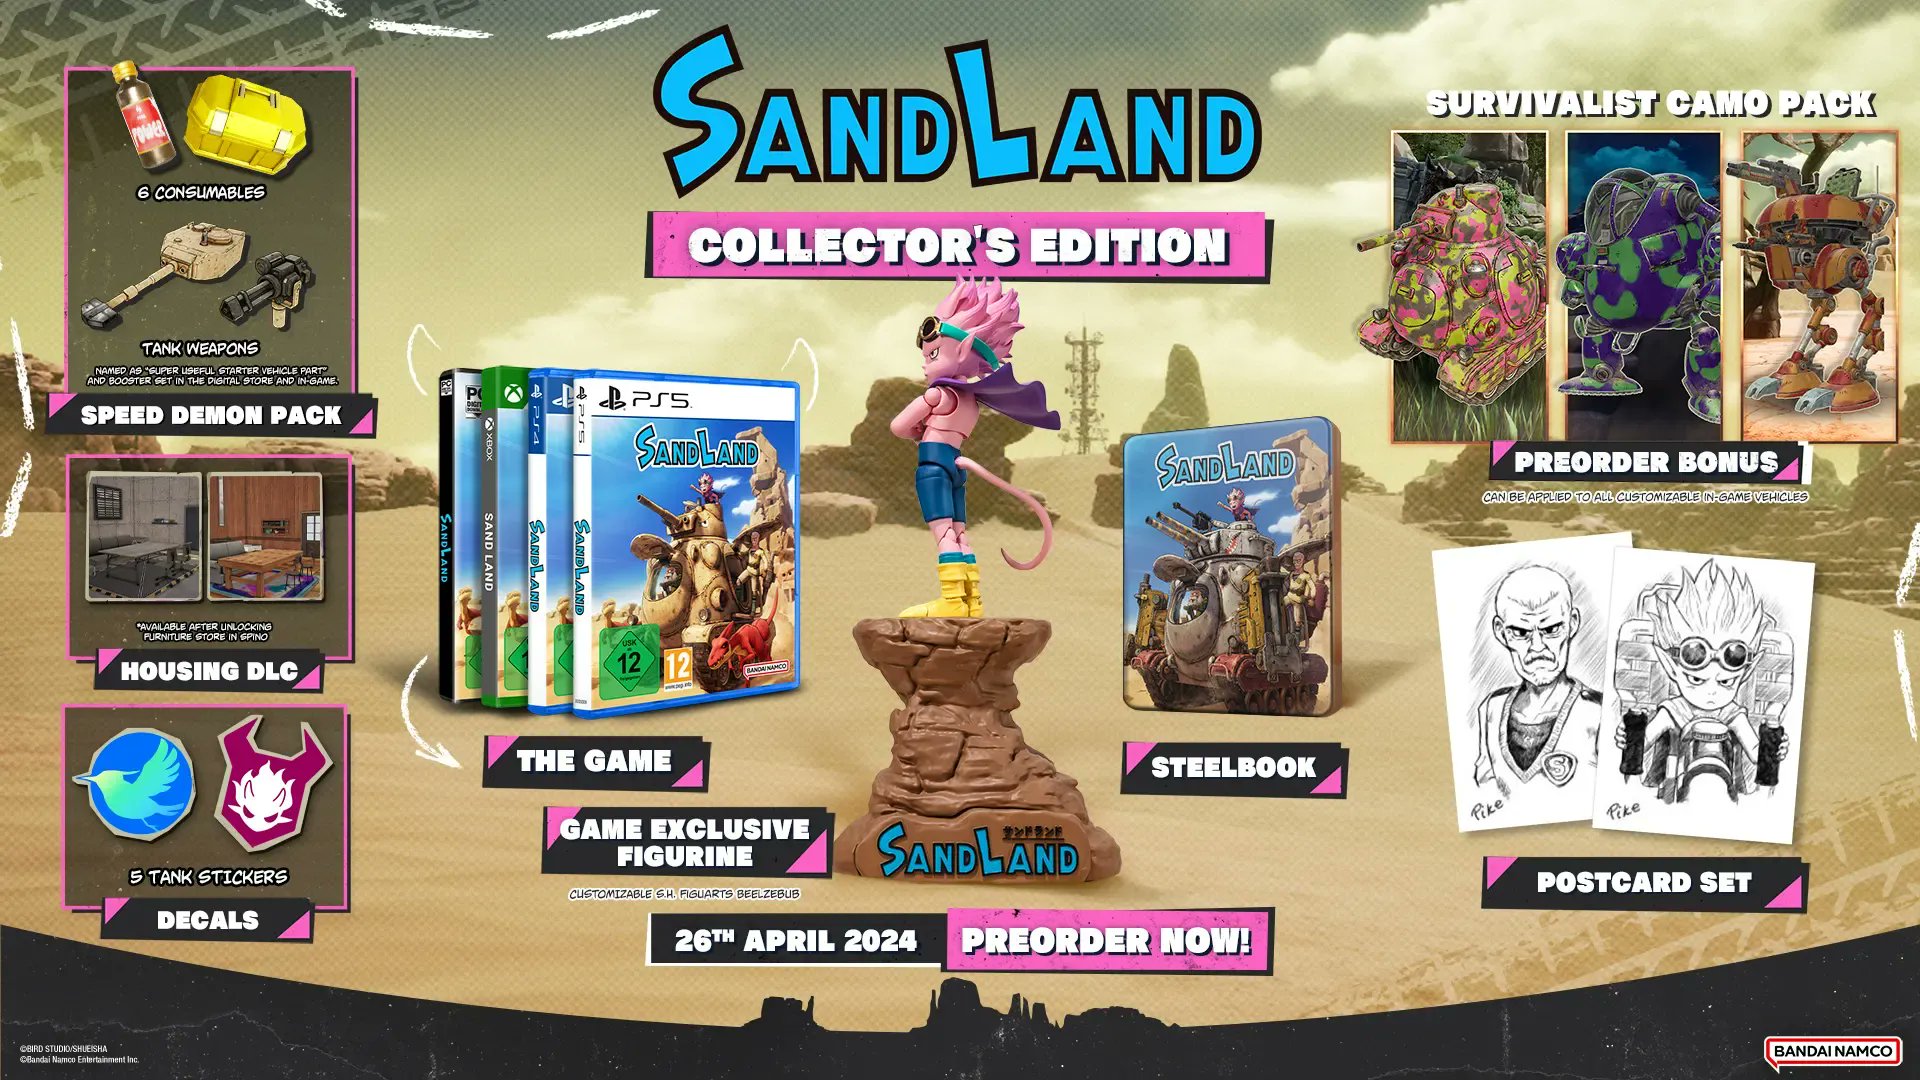 The Nerdy Basement on X: Akira Toriyama's 'SAND LAND' video game